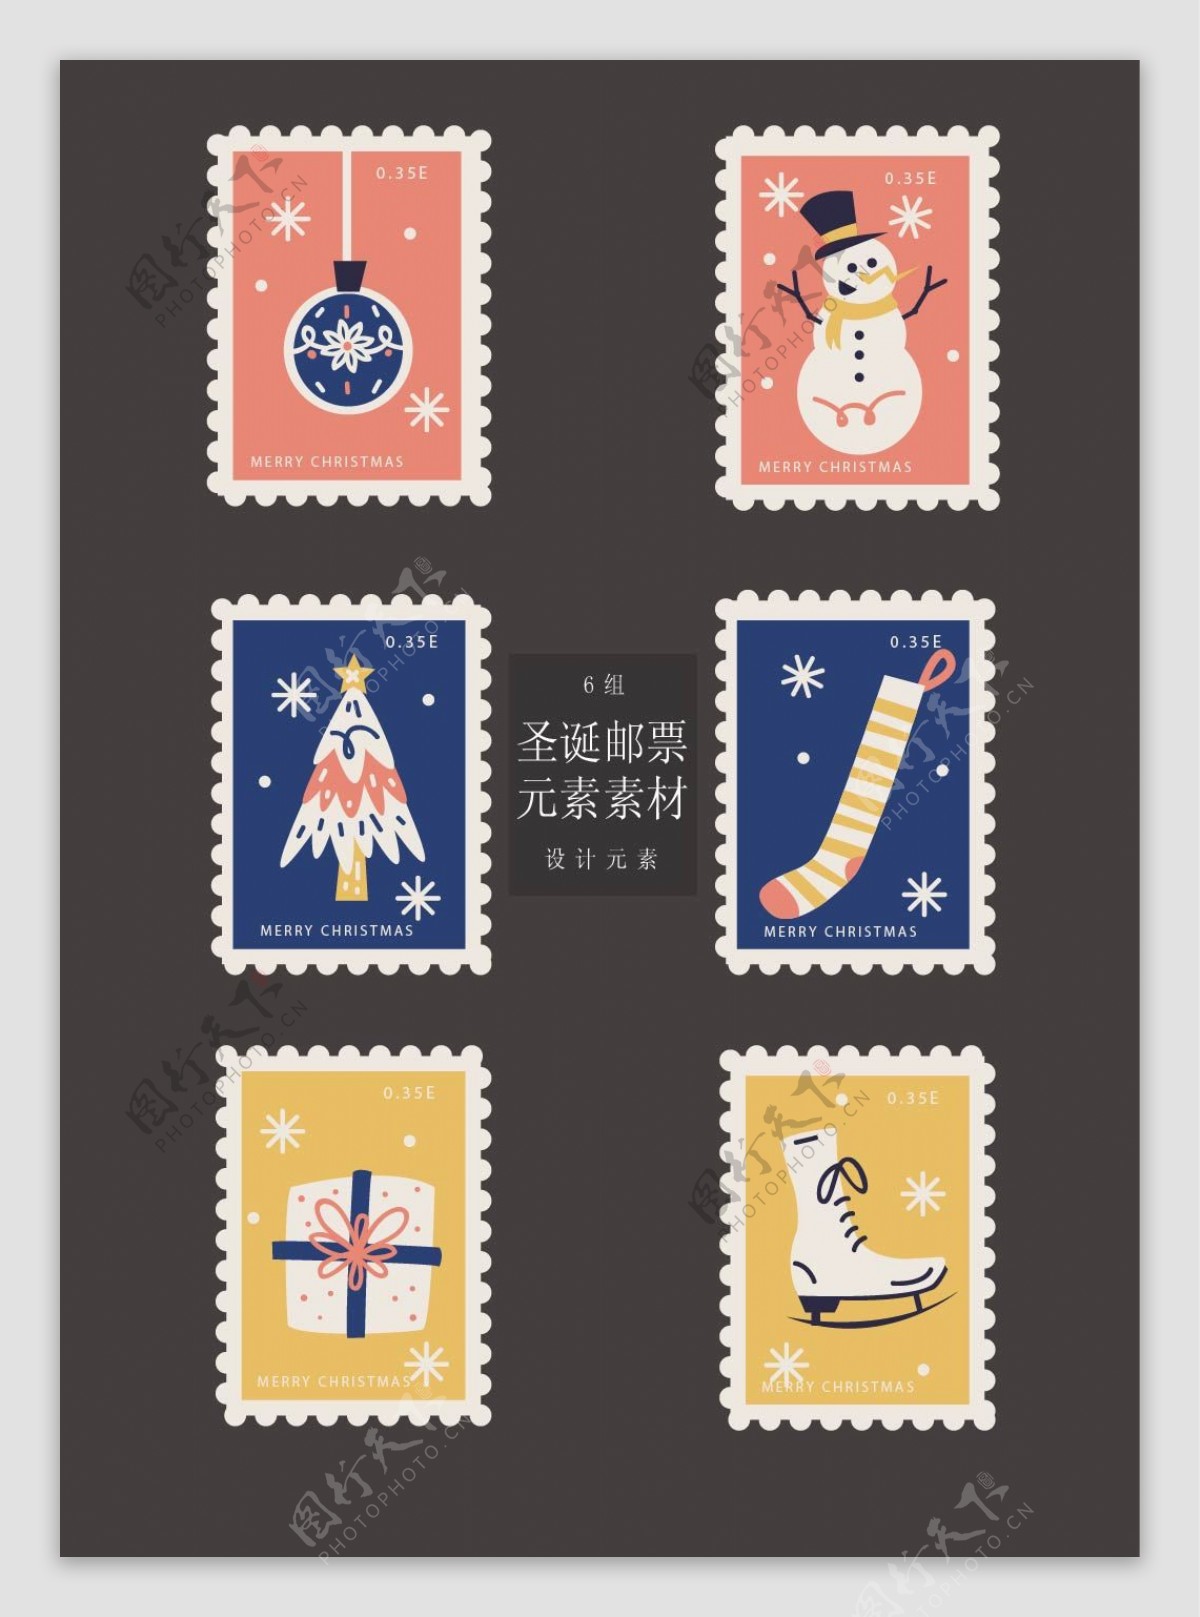 彩色手绘的圣诞邮票标签